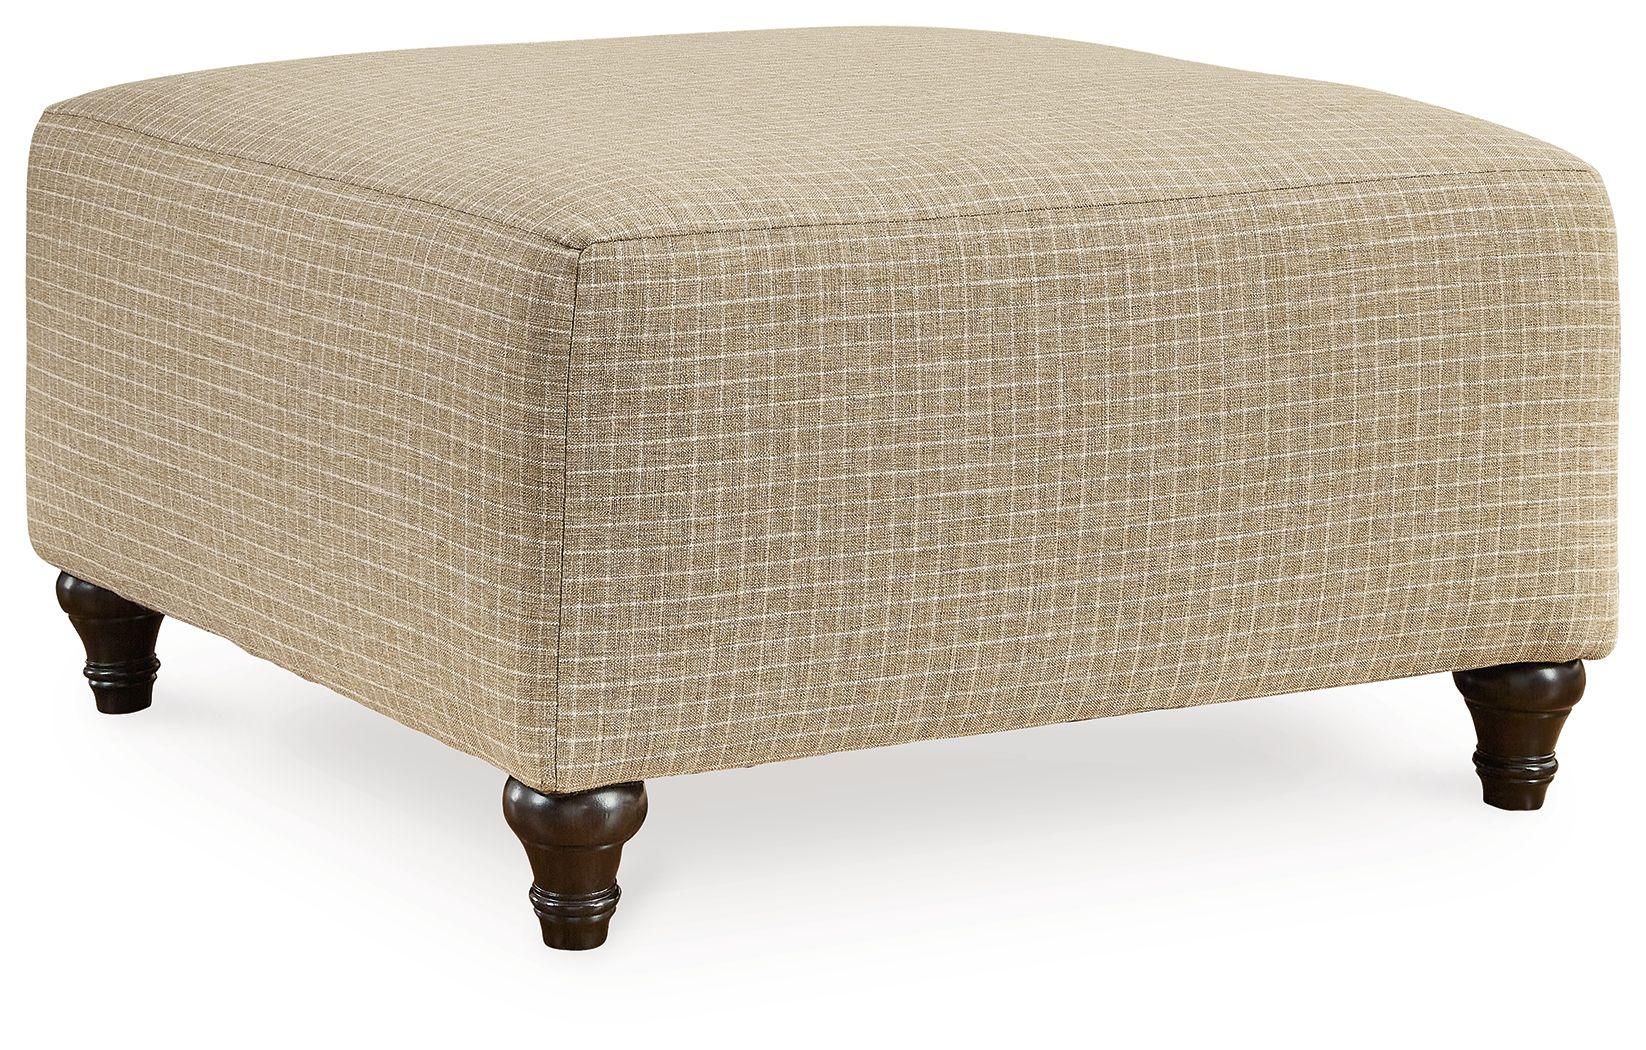 Signature Design by Ashley® - Valerani - Sandstone - Oversized Accent Ottoman - 5th Avenue Furniture